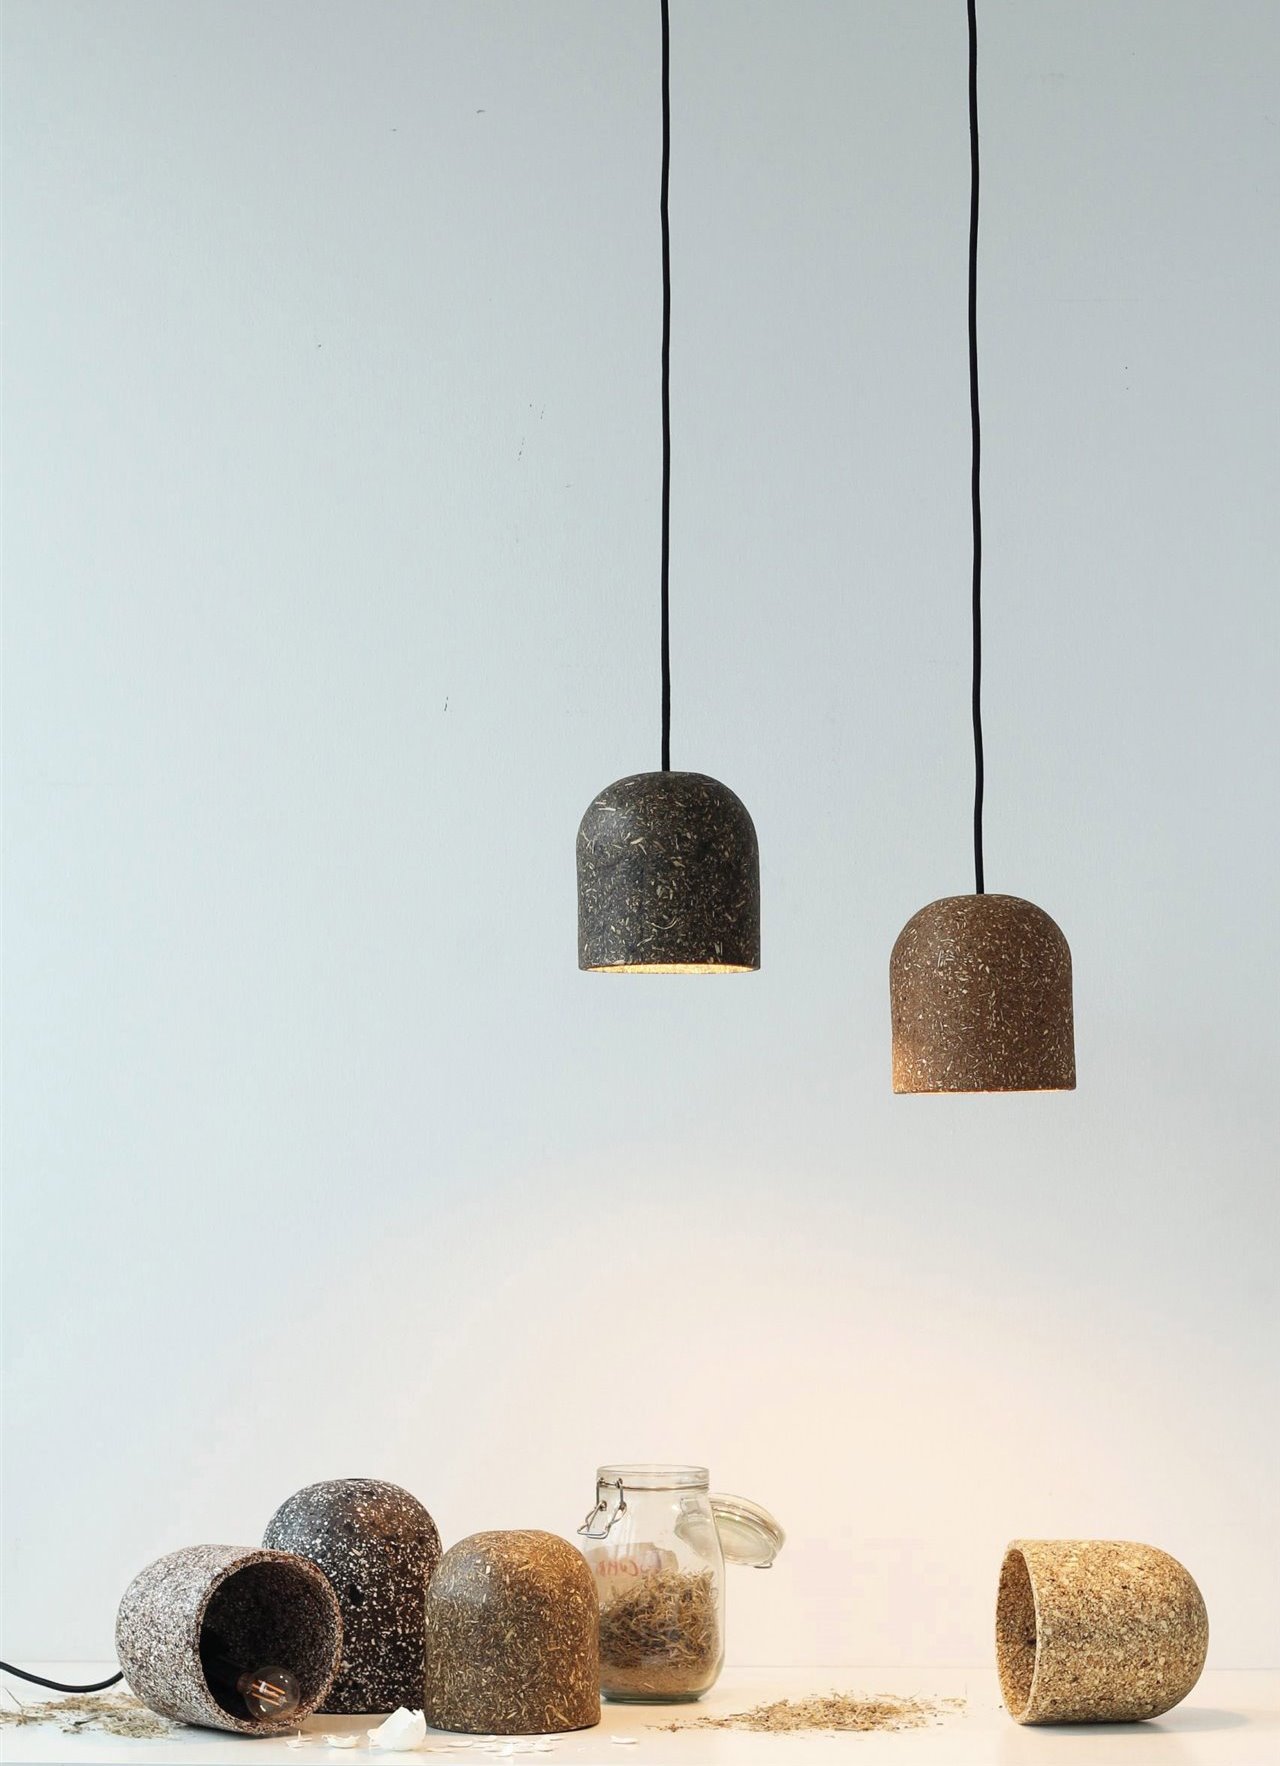 Lámparas de Caracara Collective producidas a partir de residuos como pieles de naranja u hojas de pino.